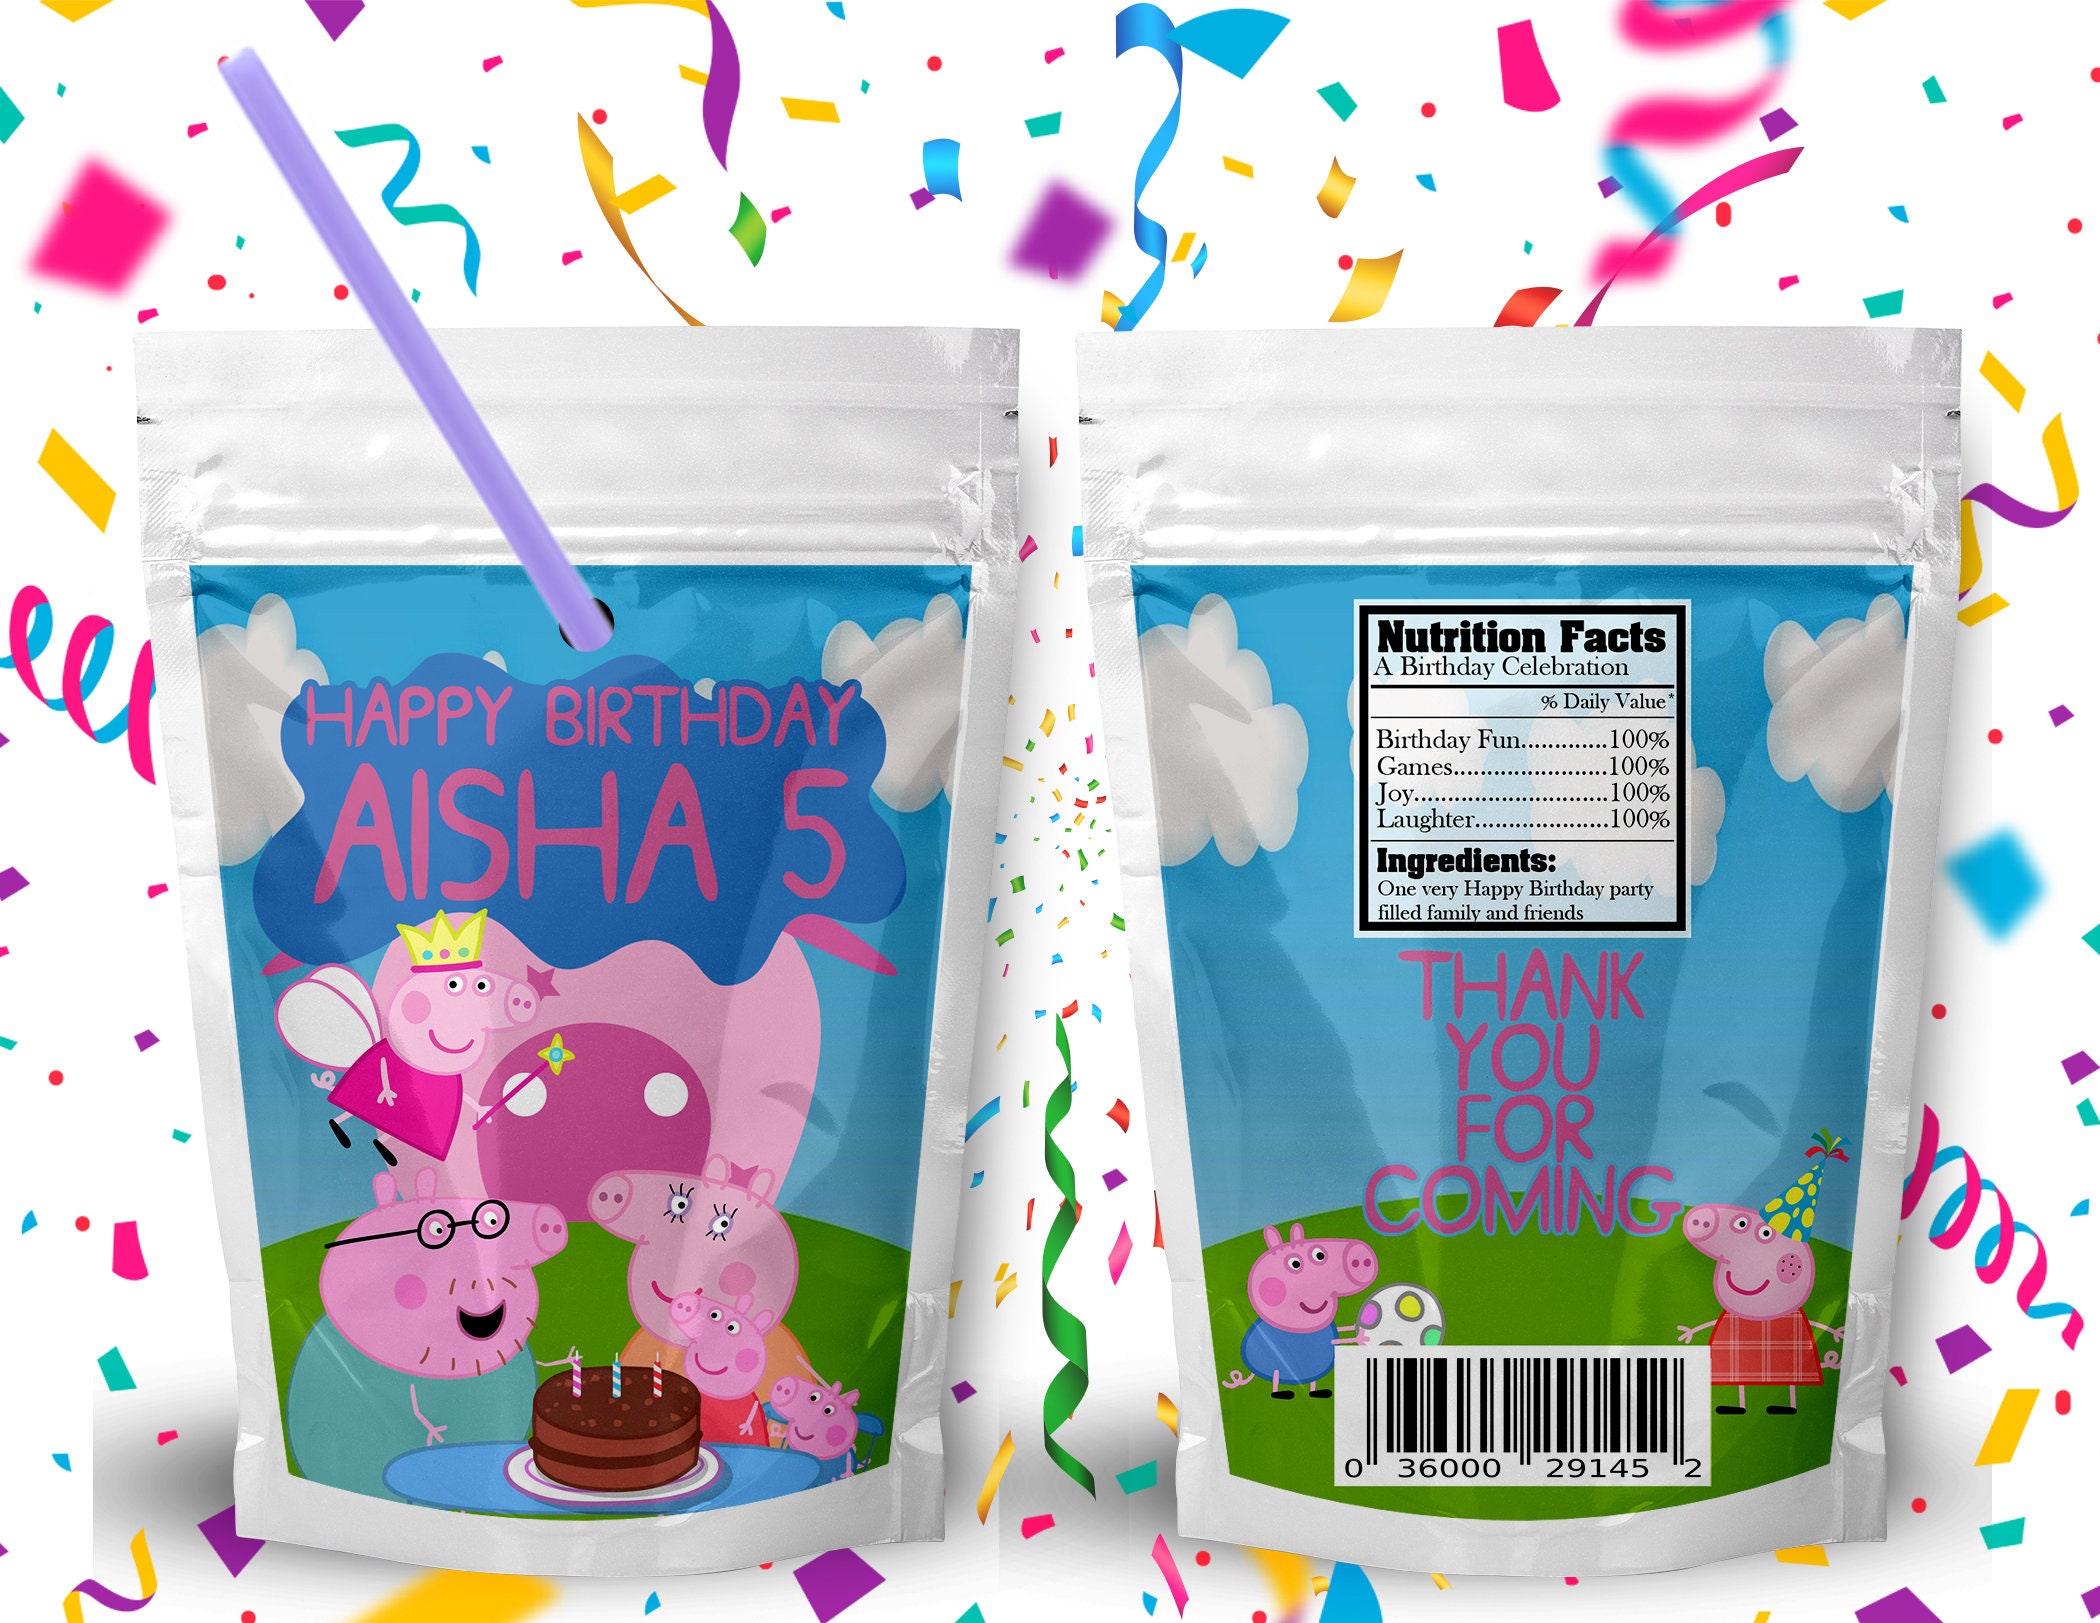 Las mejores ofertas en Peppa PIG Cumpleaños Fiesta plástico